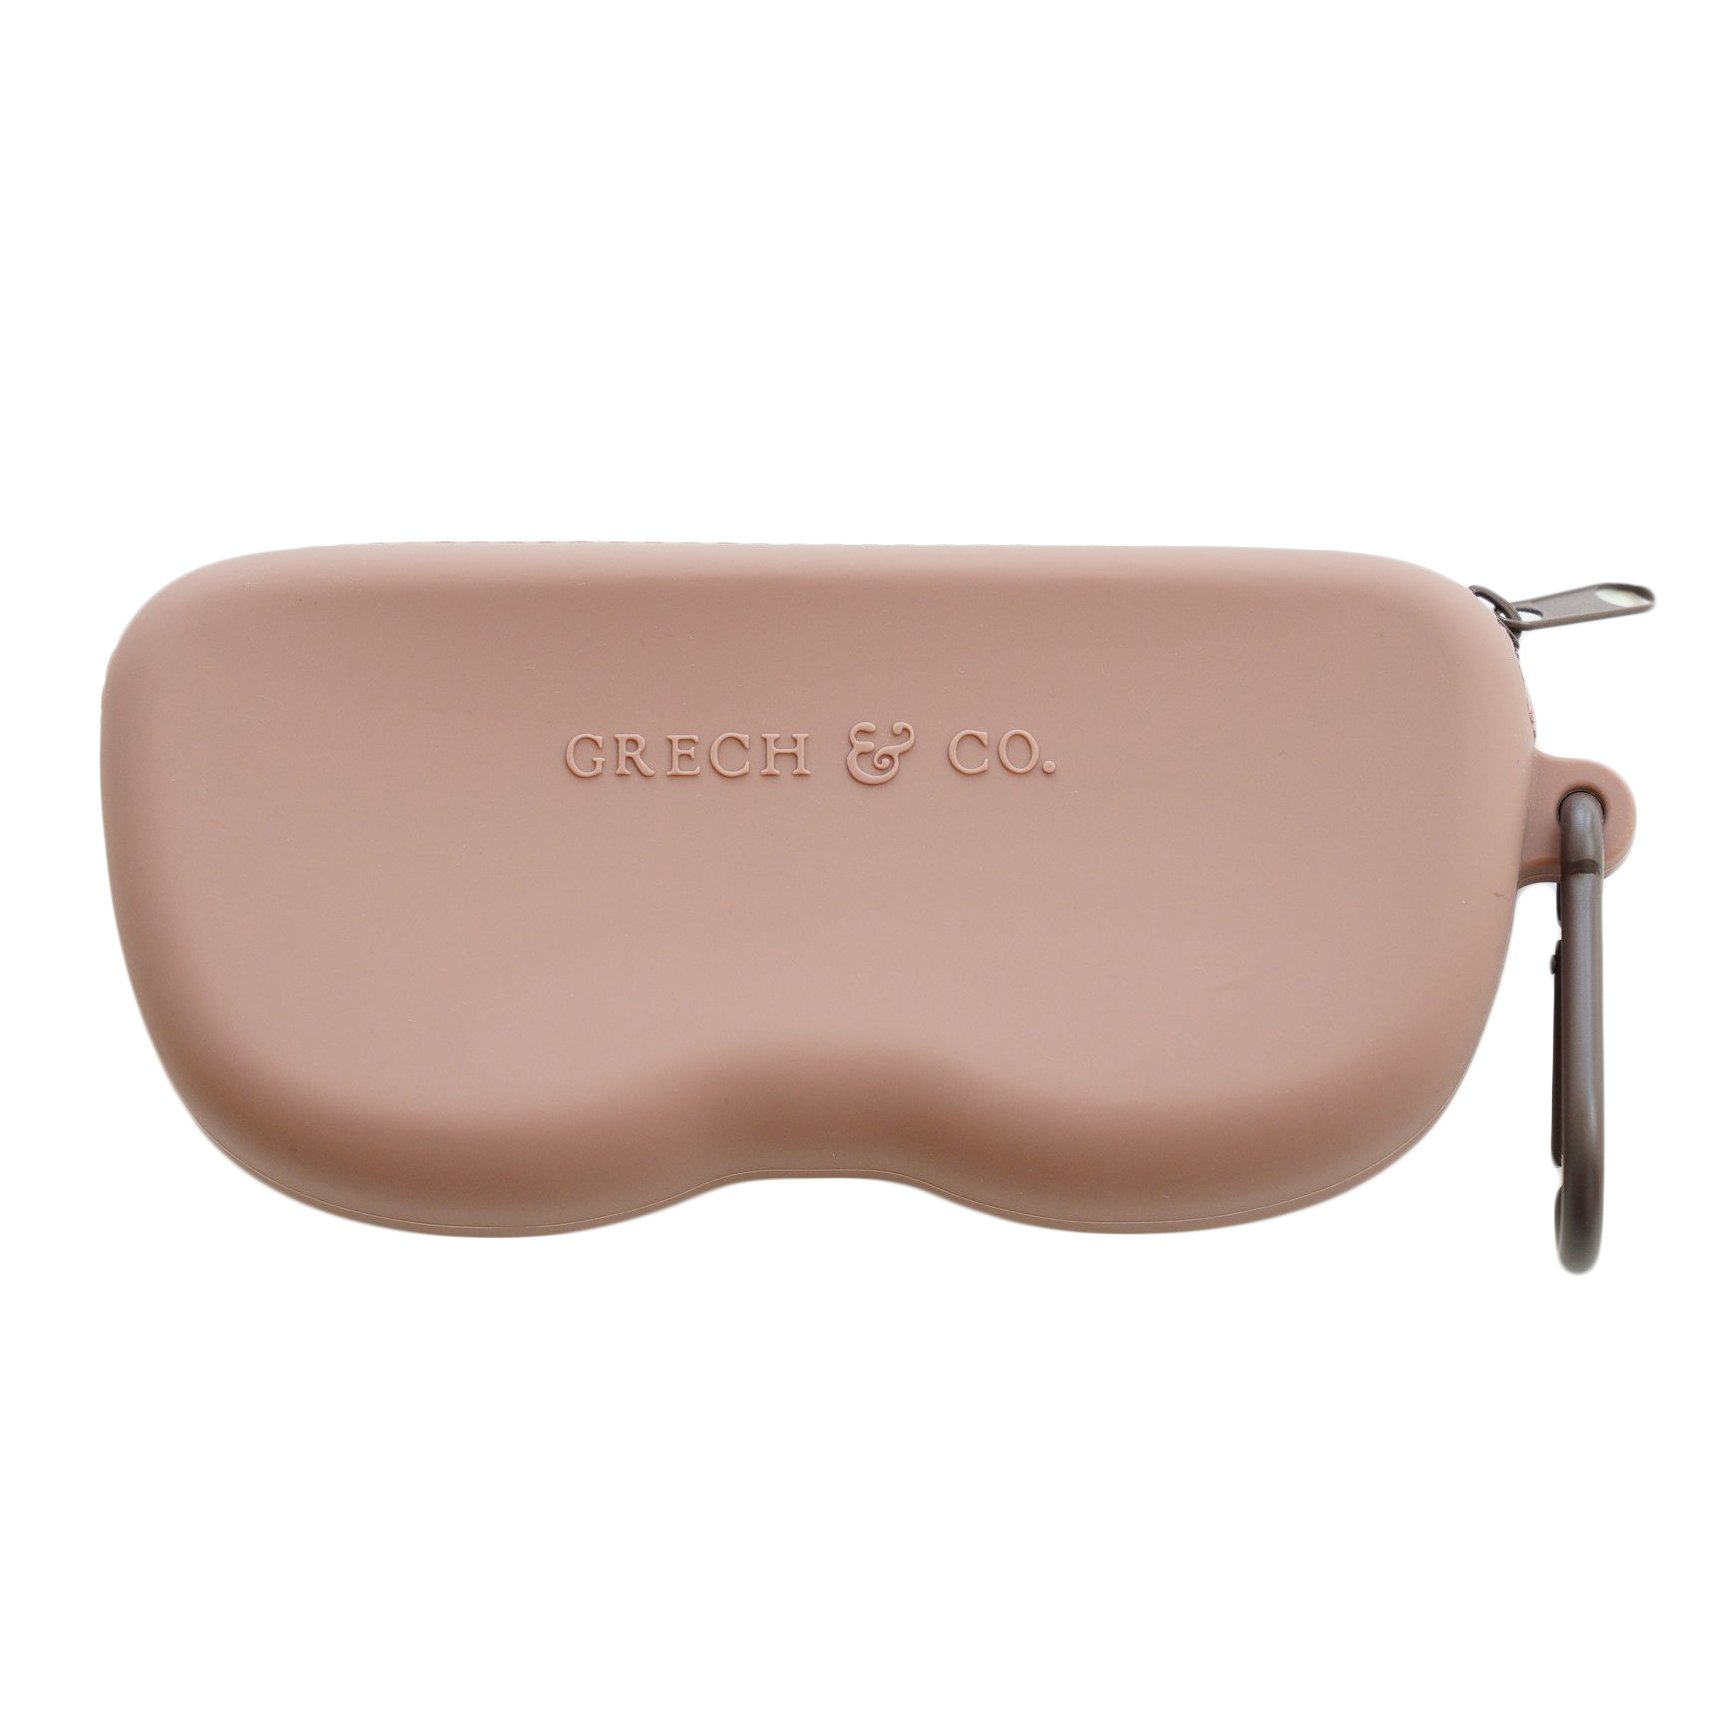 Grech & Co Sunglasses Case